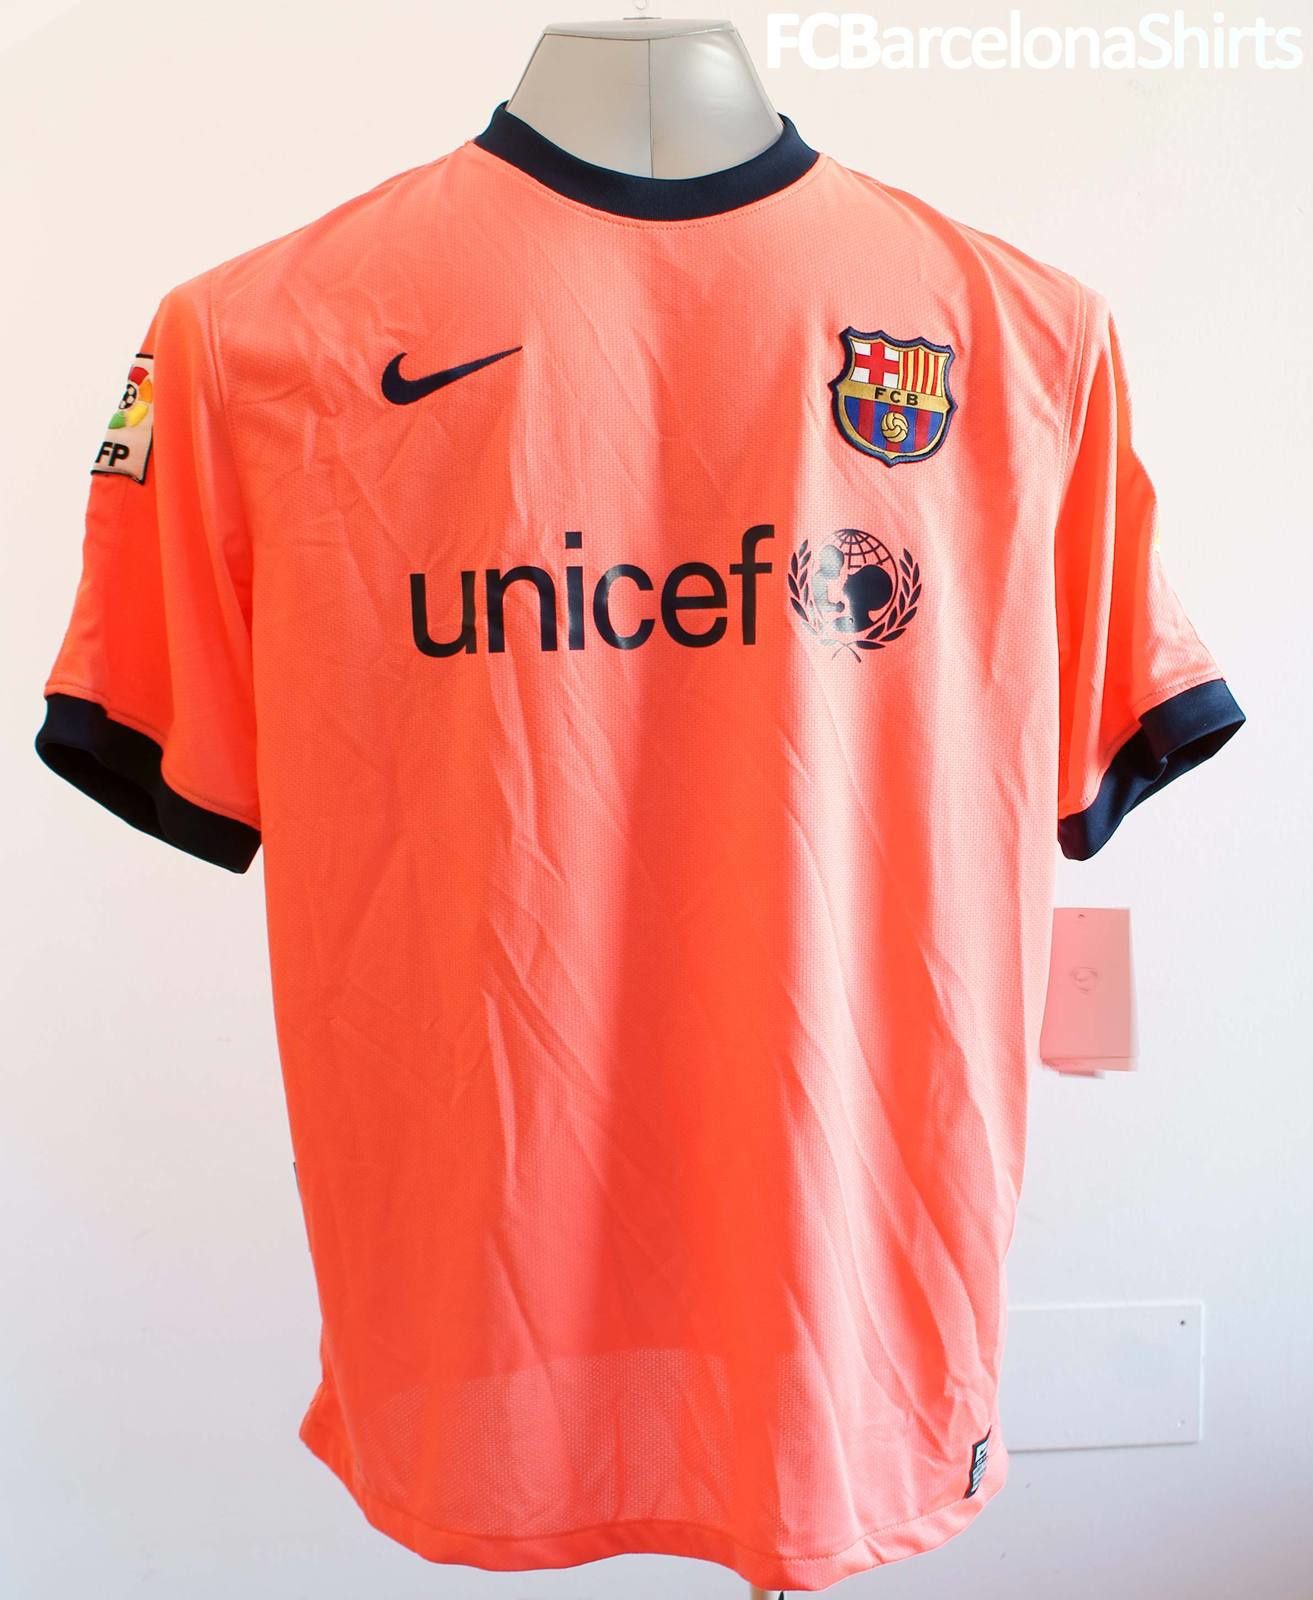 Les maillots du Barça